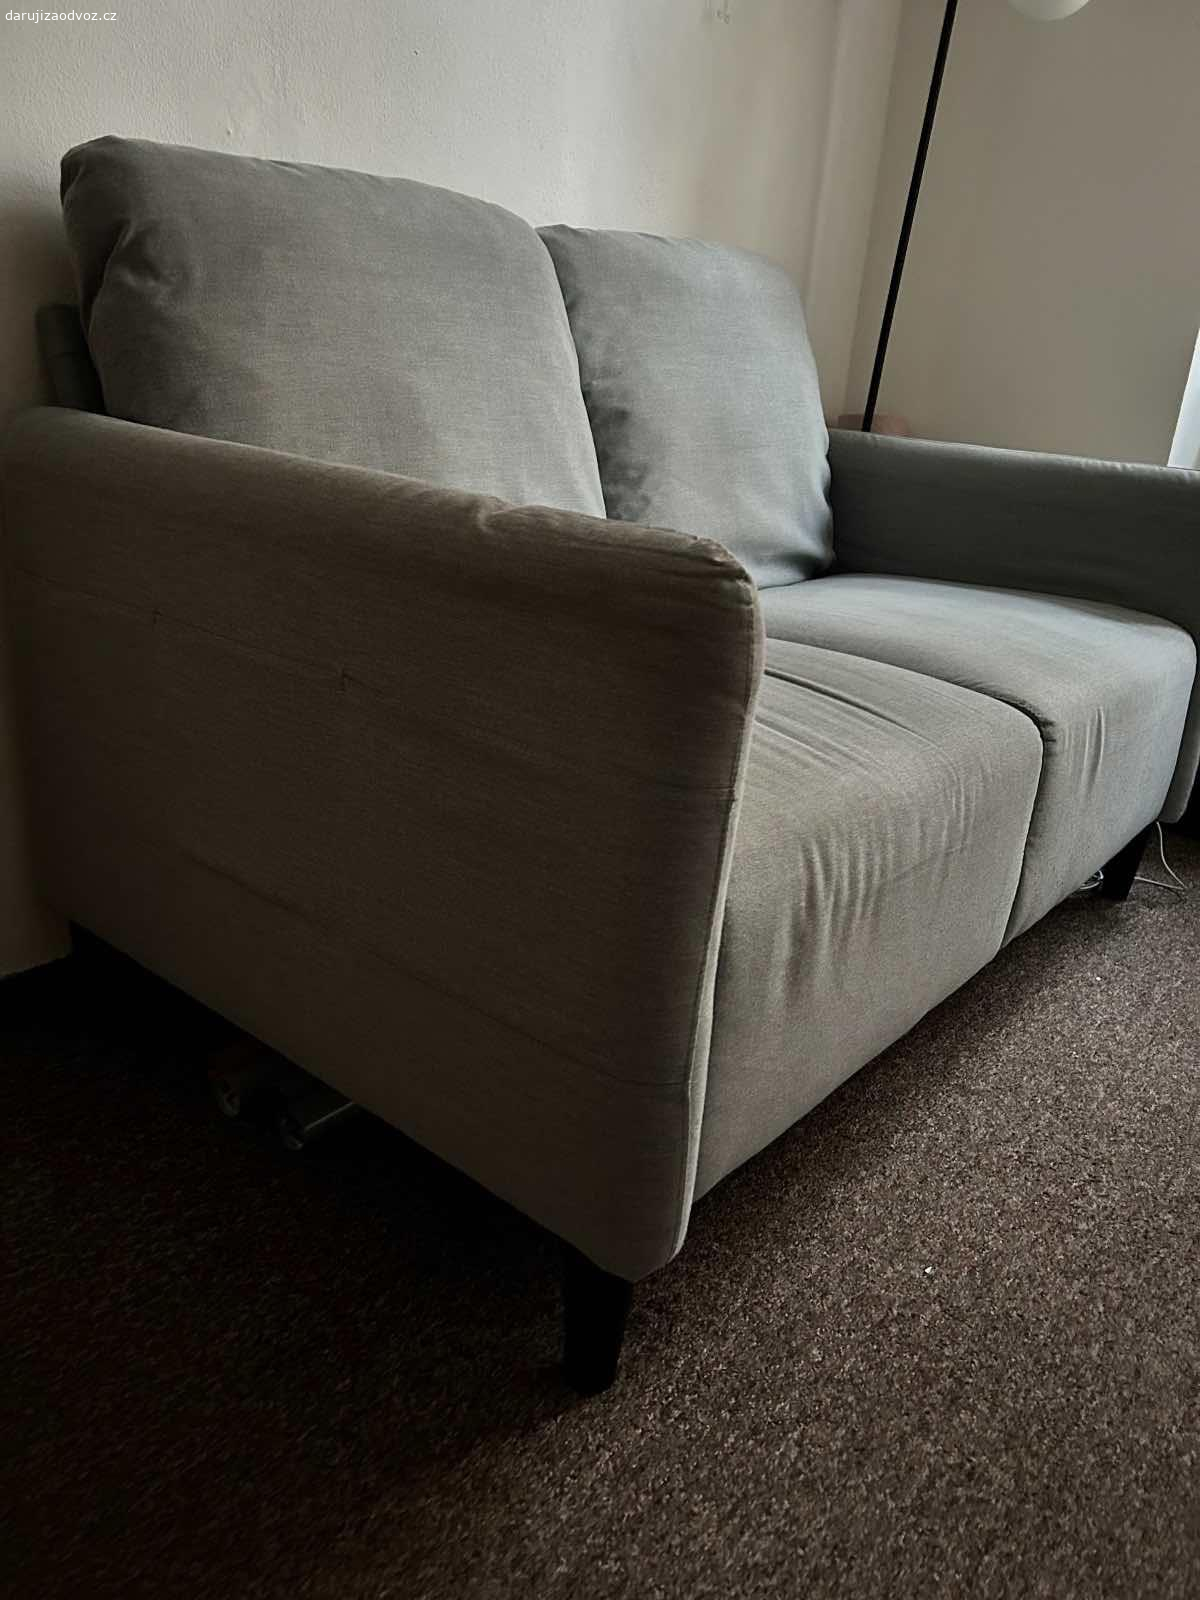 Daruji dvoumístný gauč Ikea. Používaný dva roky, trochu špinavý vzhledem ke světlé barvě.